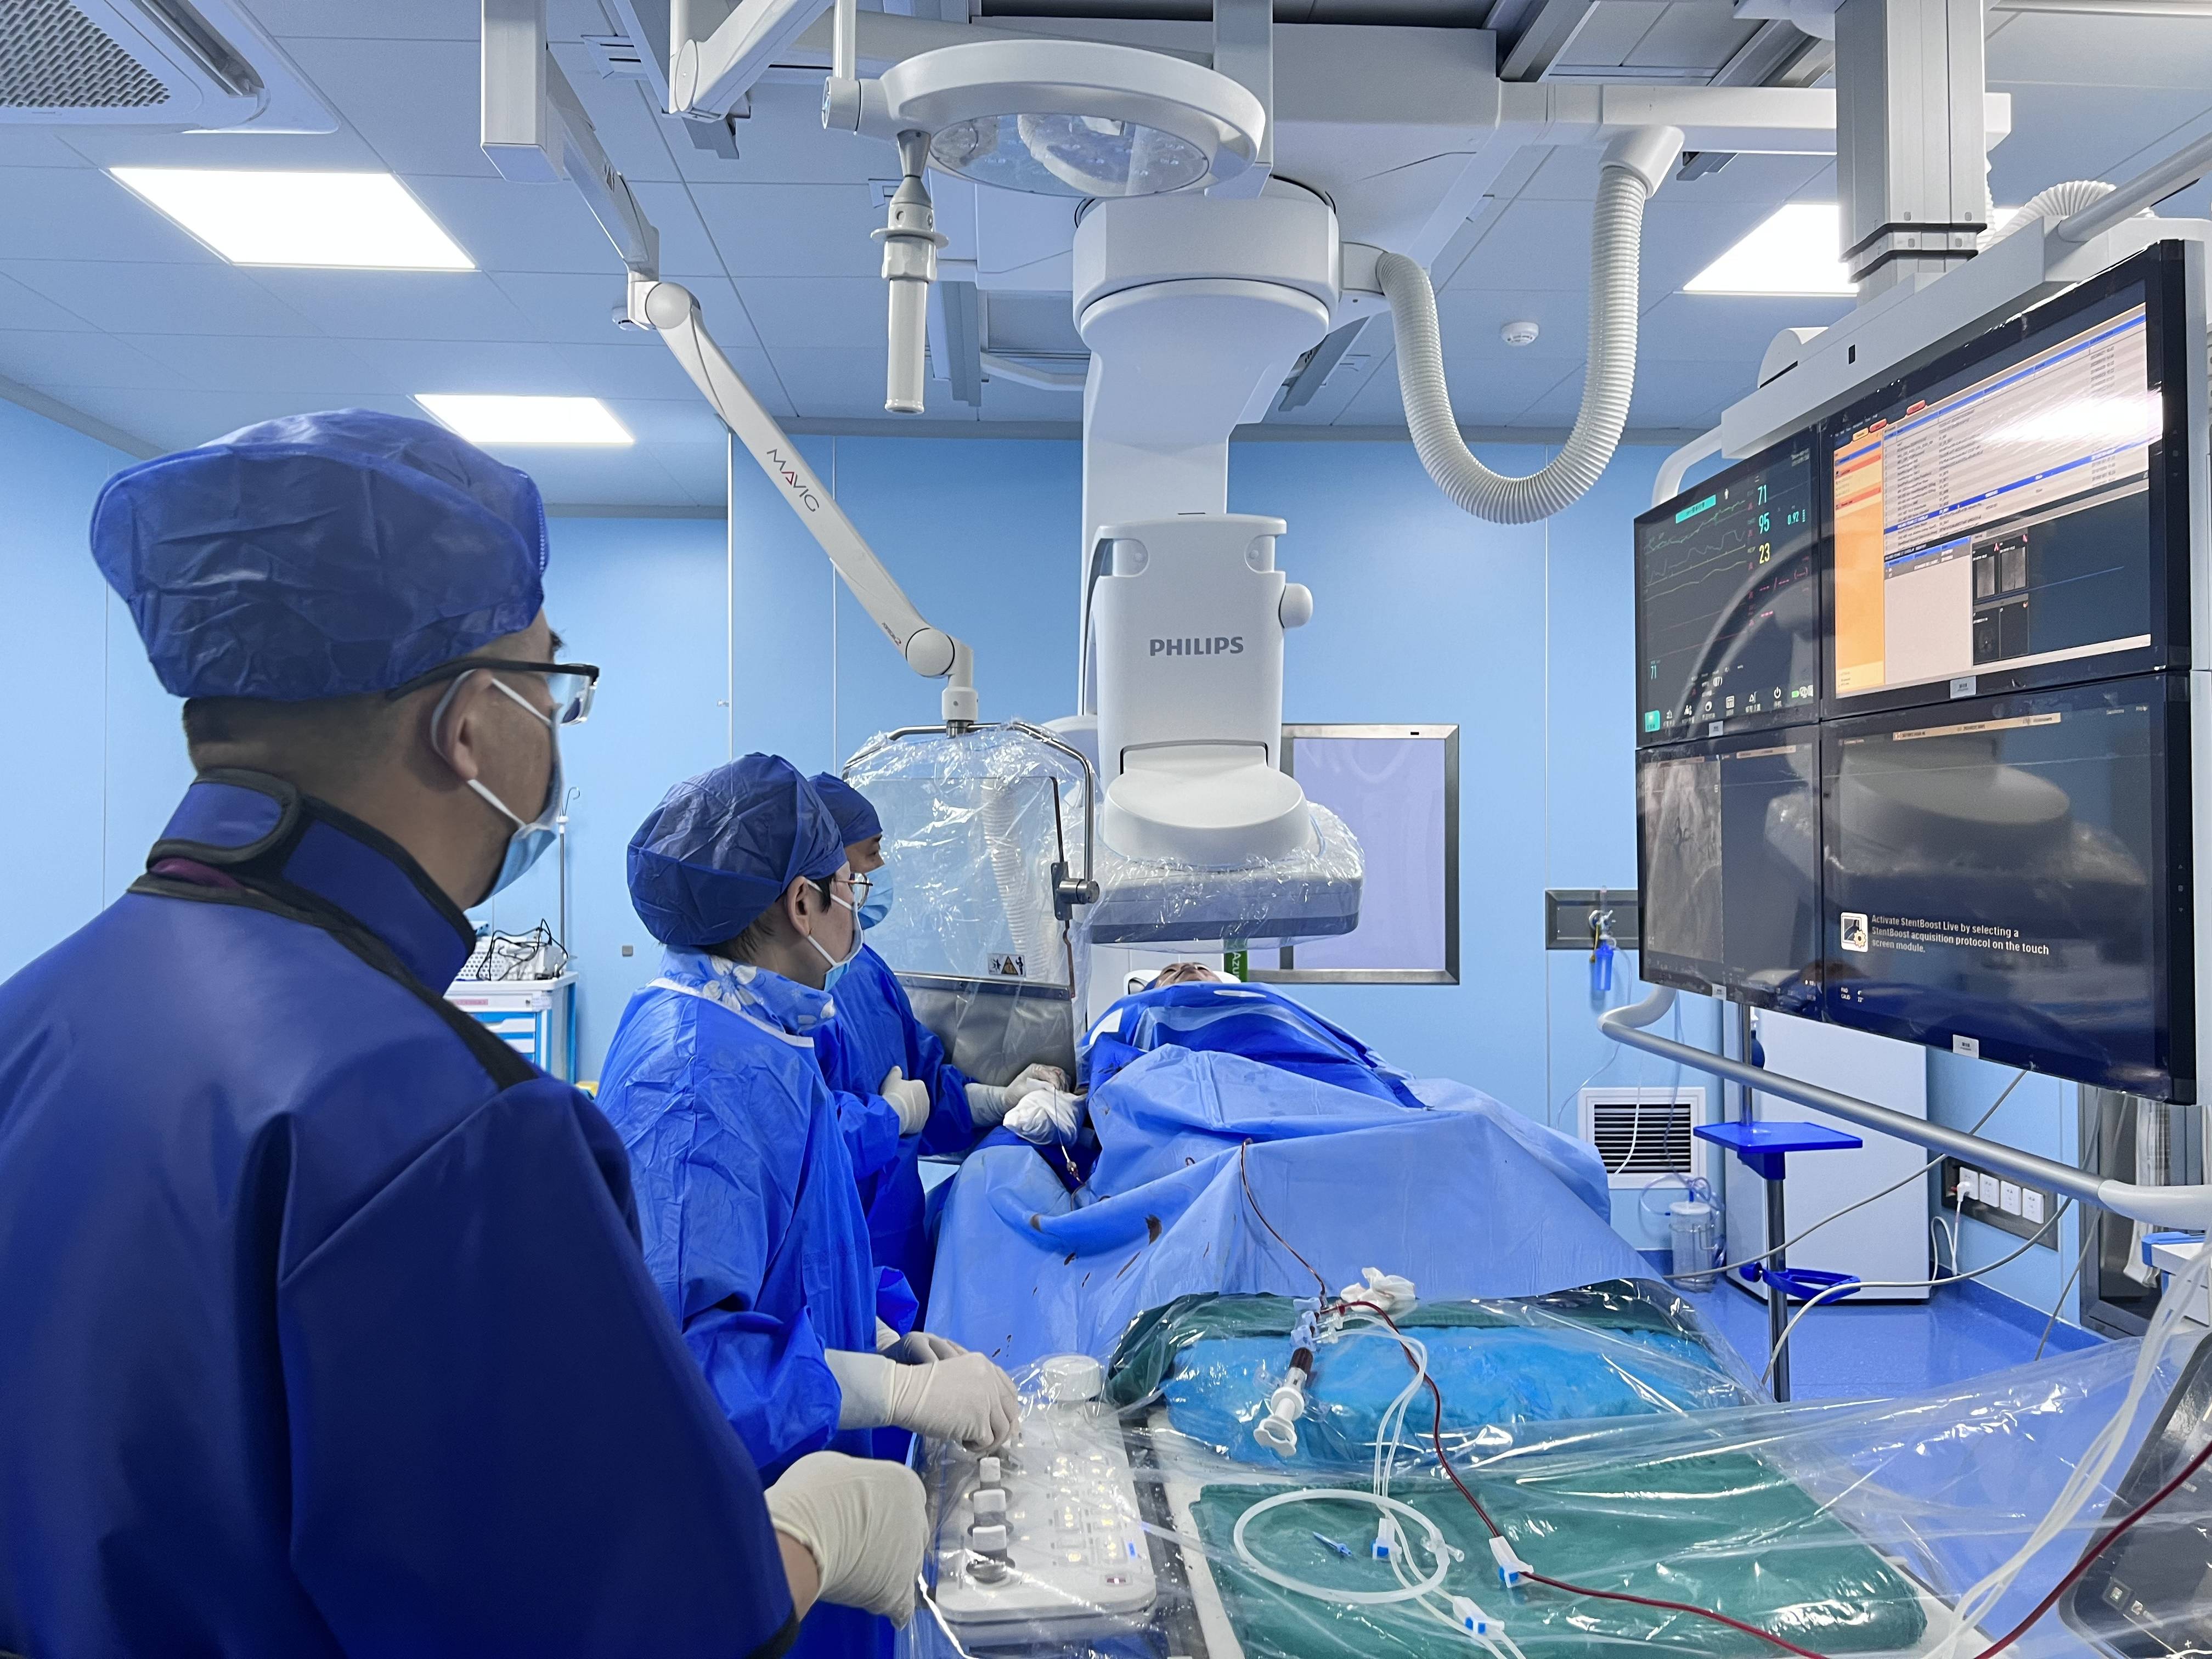 西安工会医院·西安康复医院介入手术室正式开科 迈向心时代新征程